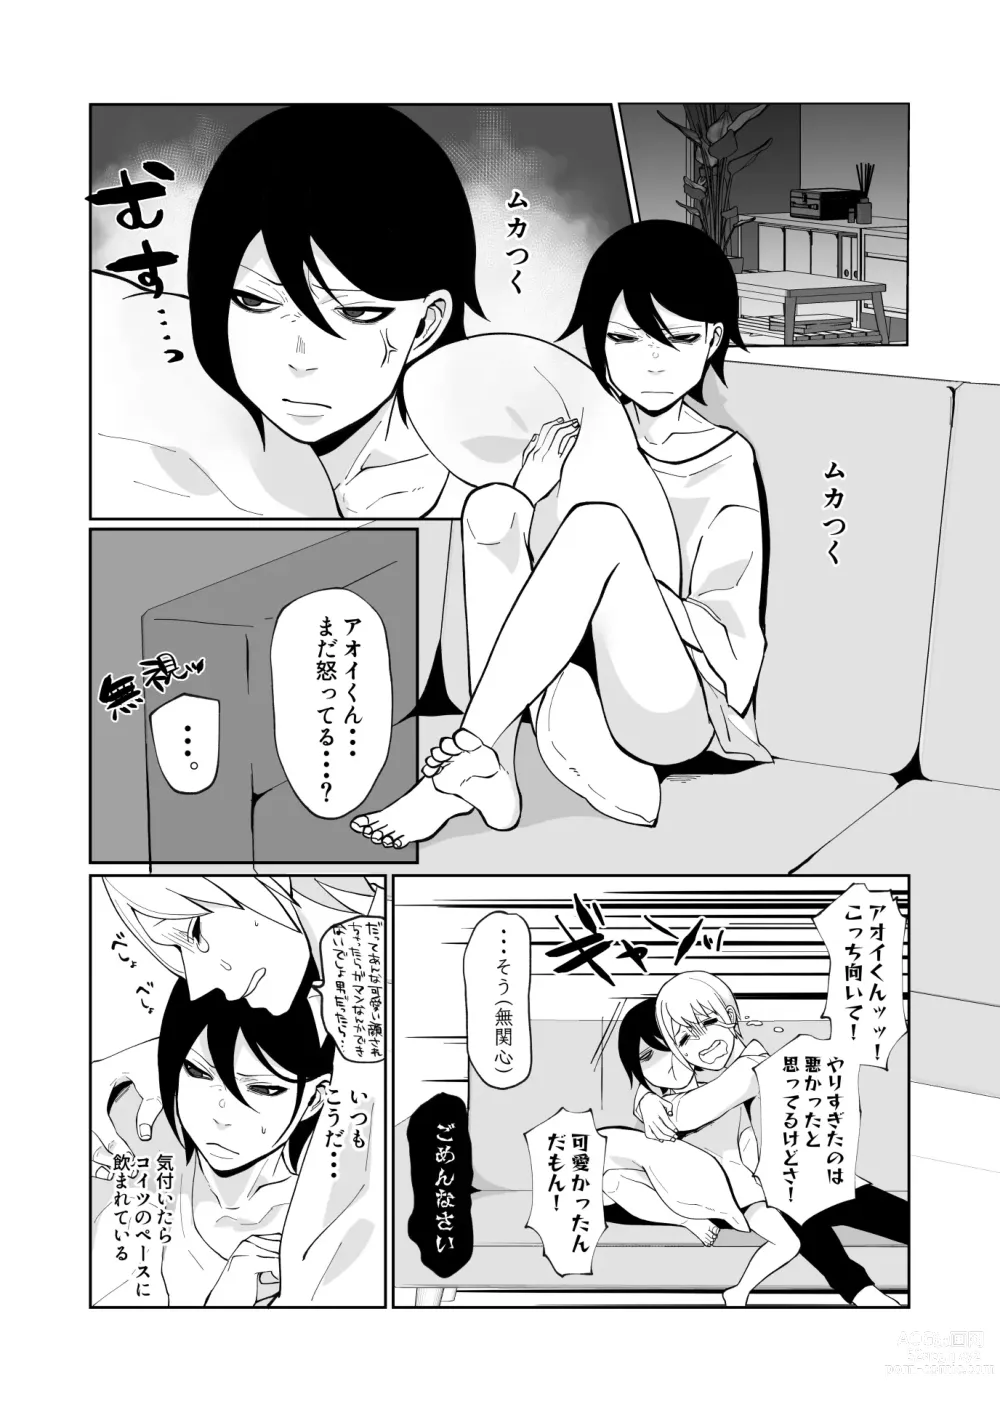 Page 5 of doujinshi Wakaraseru Hazu datta noni Kekkyoku Wakaraserarete Renzoku Shiofuki Zecchou Saserareta